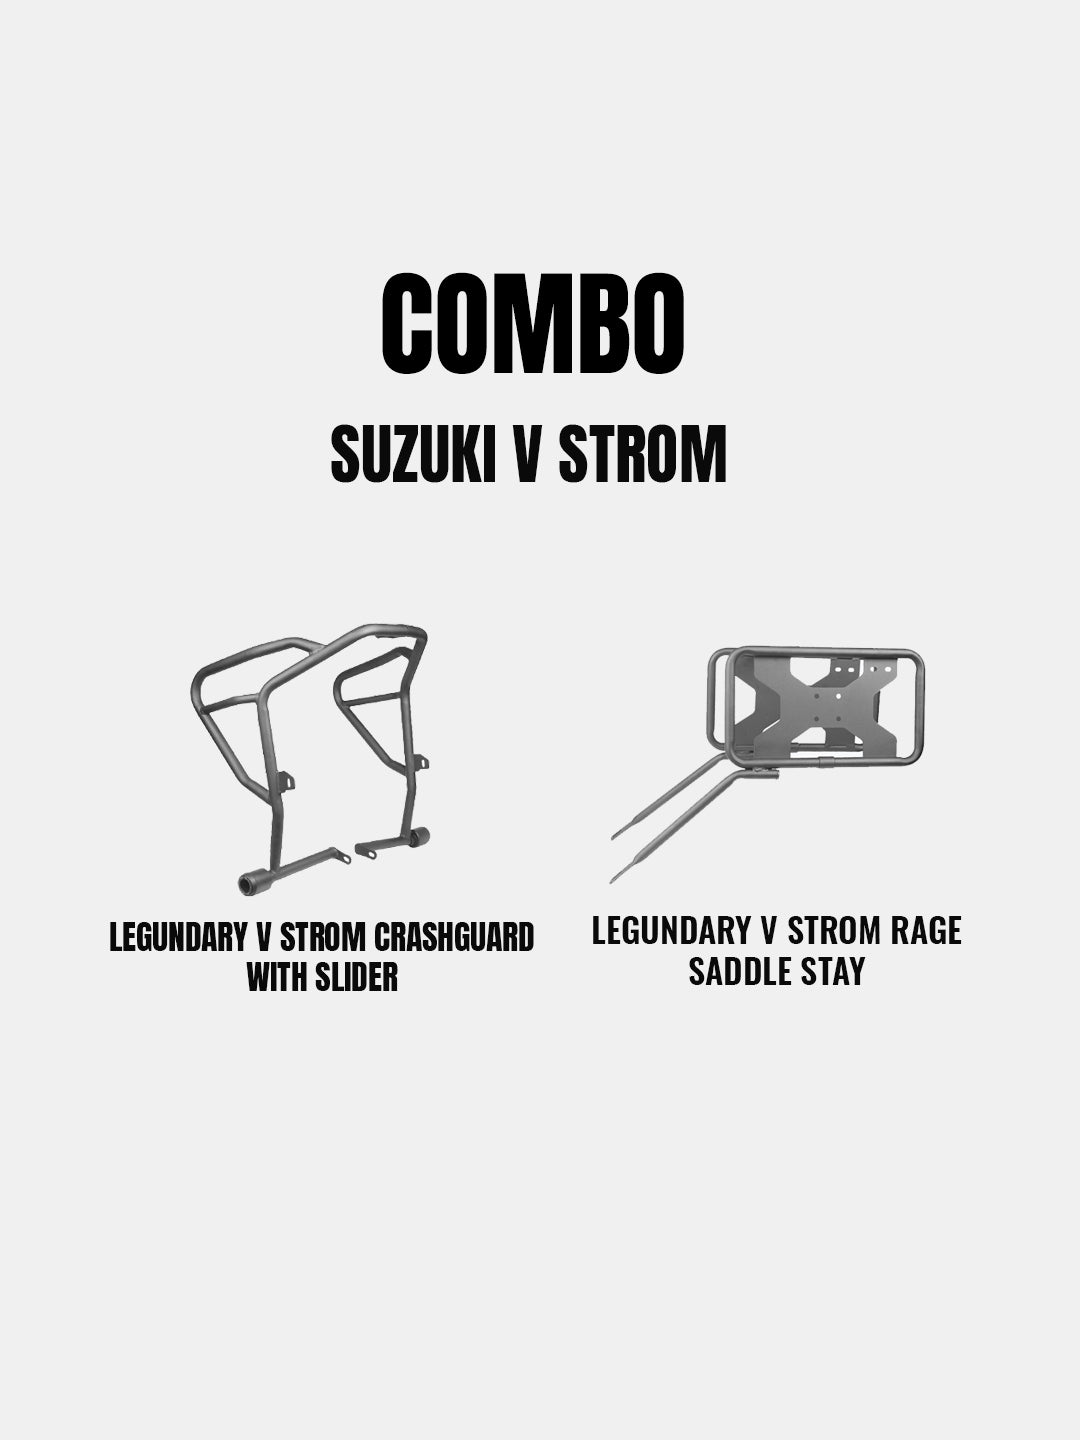 LEGUNDARY COMBO FOR SUZUKI V STROM - ADRINEX CG WITH SLIDER + RAGE SADDLESTAY